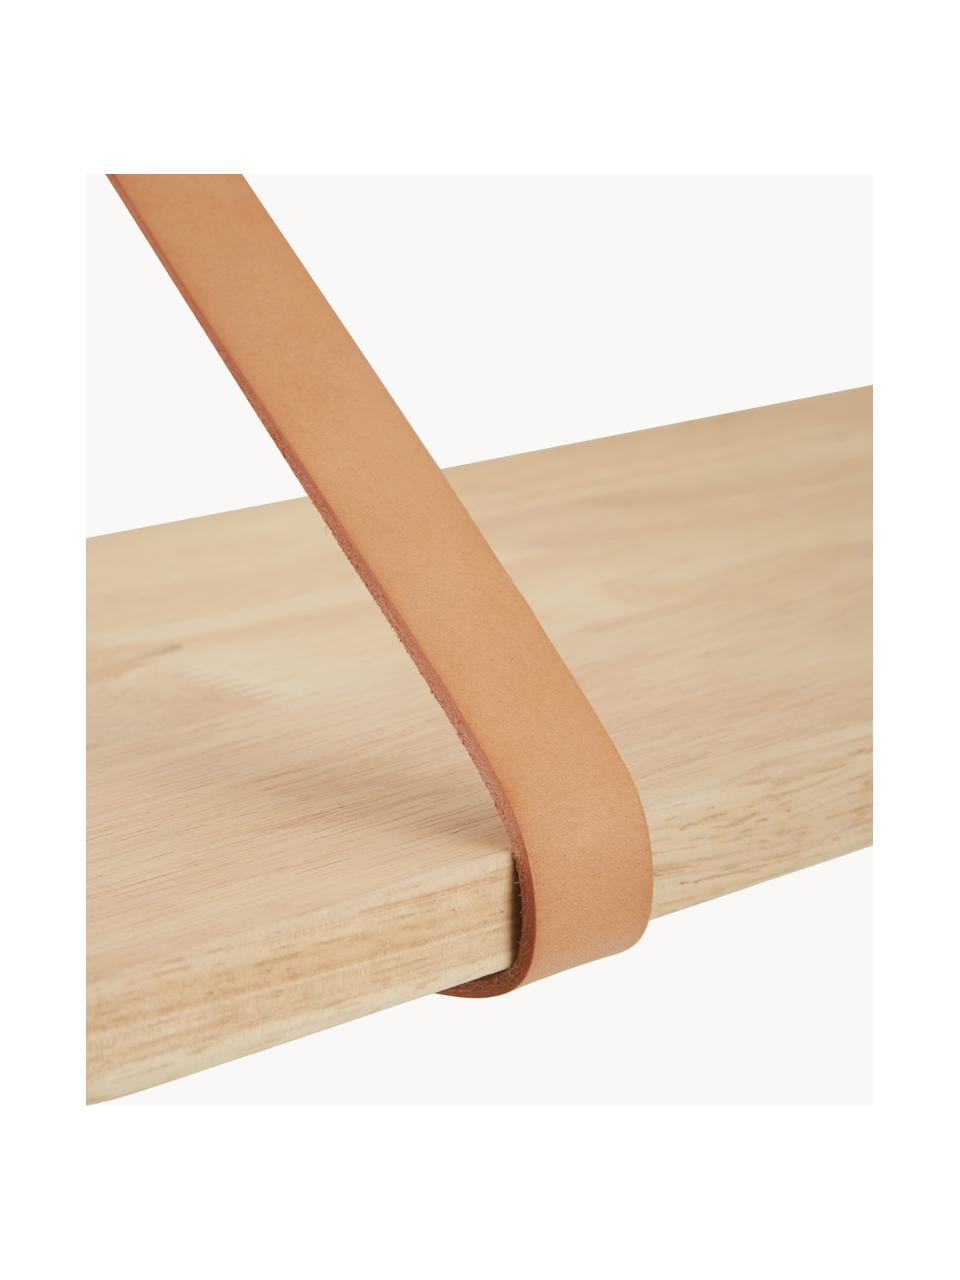 Wandplank Forno met leren riemen, naturel, Plank: rubberhout, naturel, Riemen: leer, Rubberhout, beige, B 80 x D 20 cm